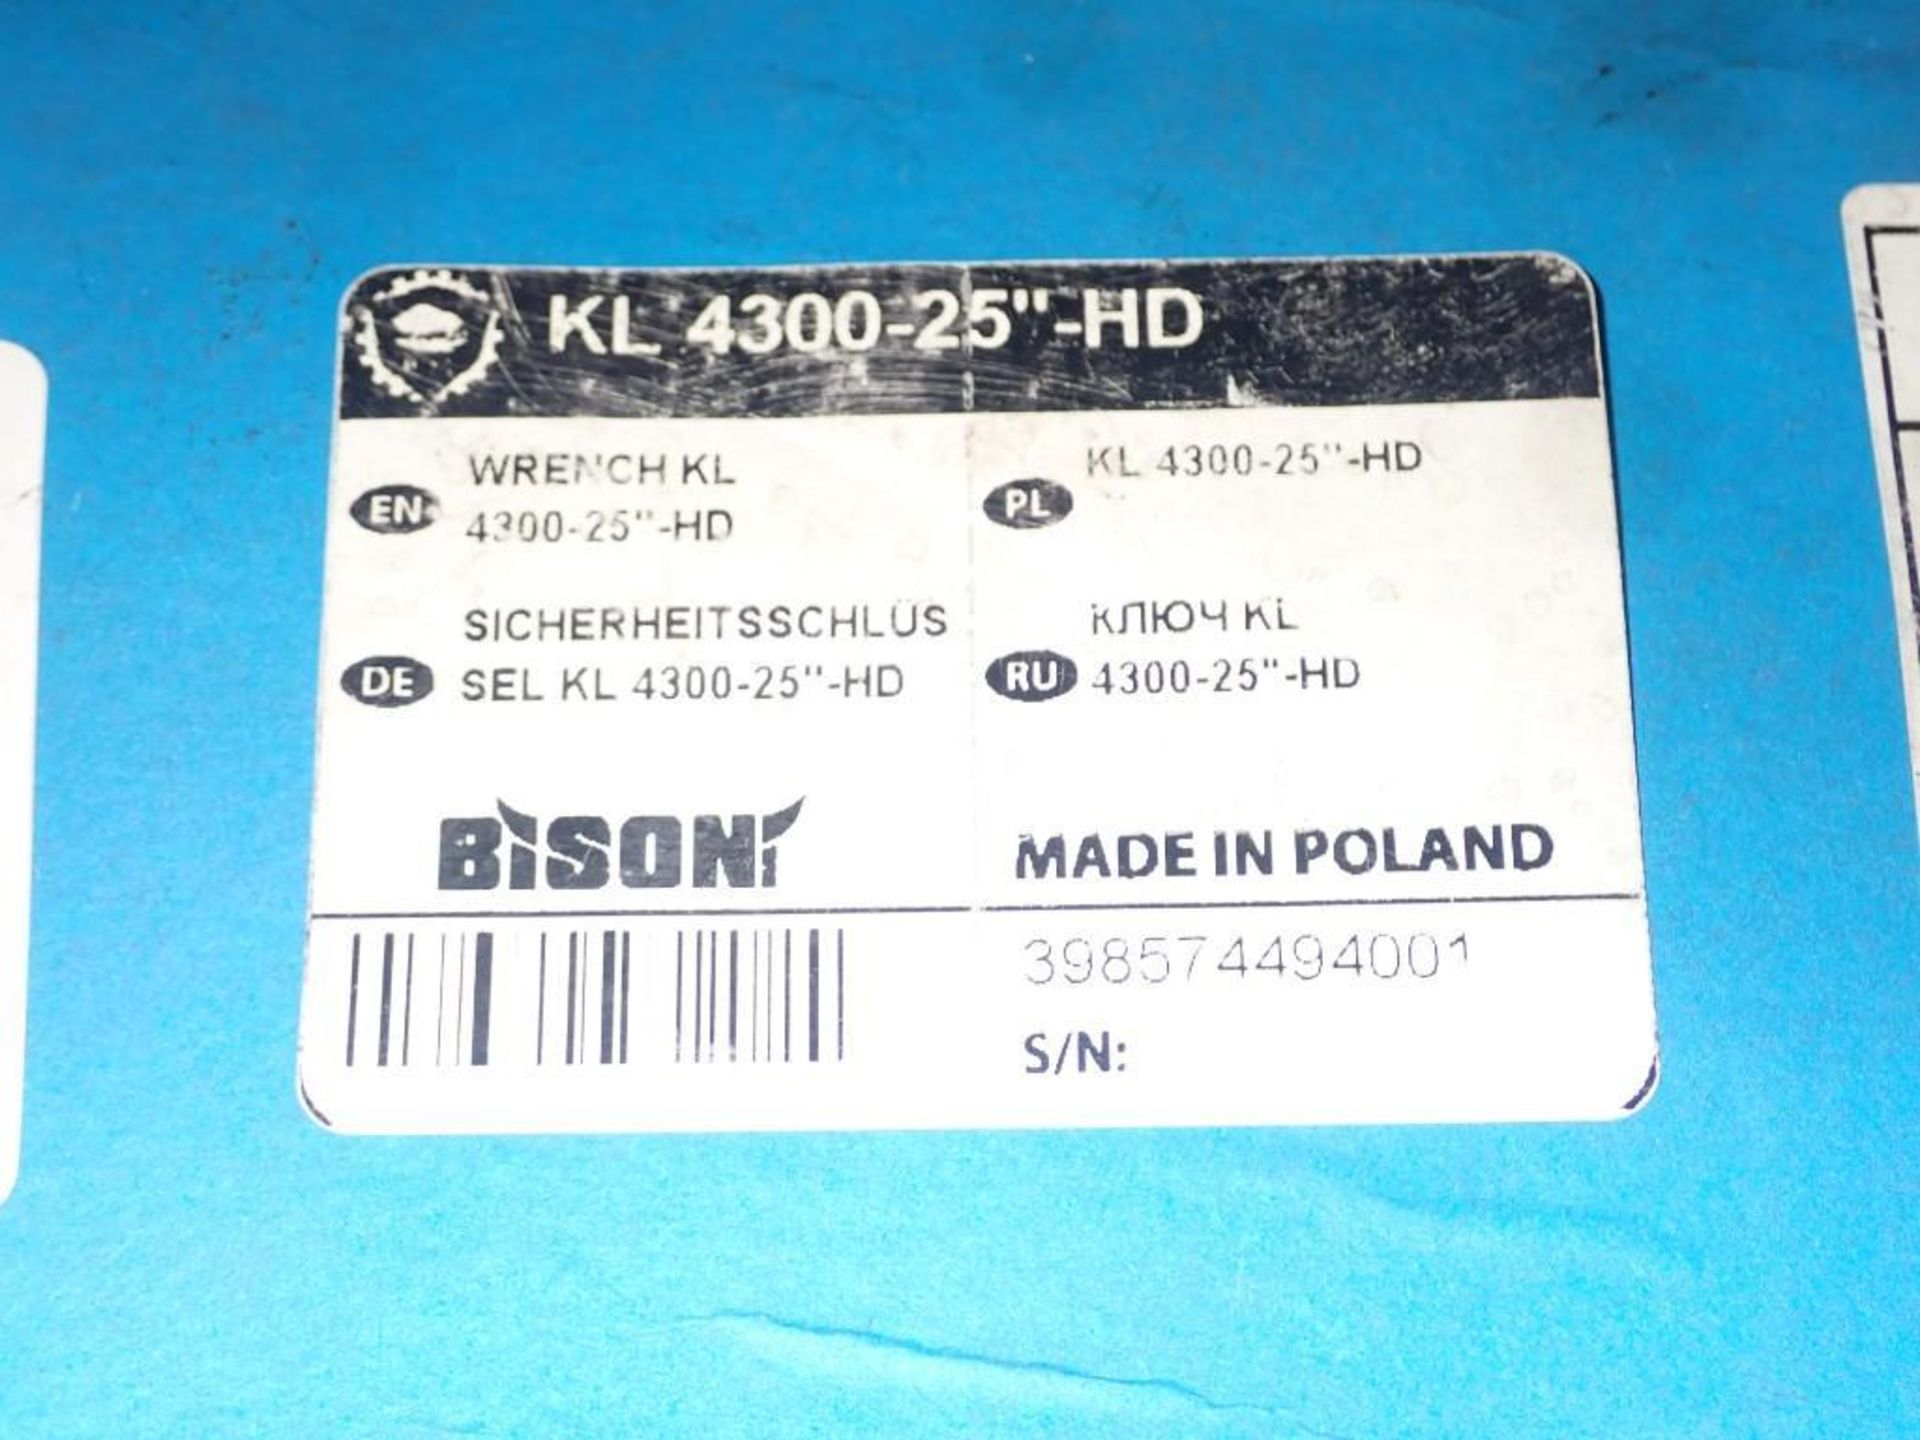 Bison #KL 4300-25" HD - Image 2 of 4